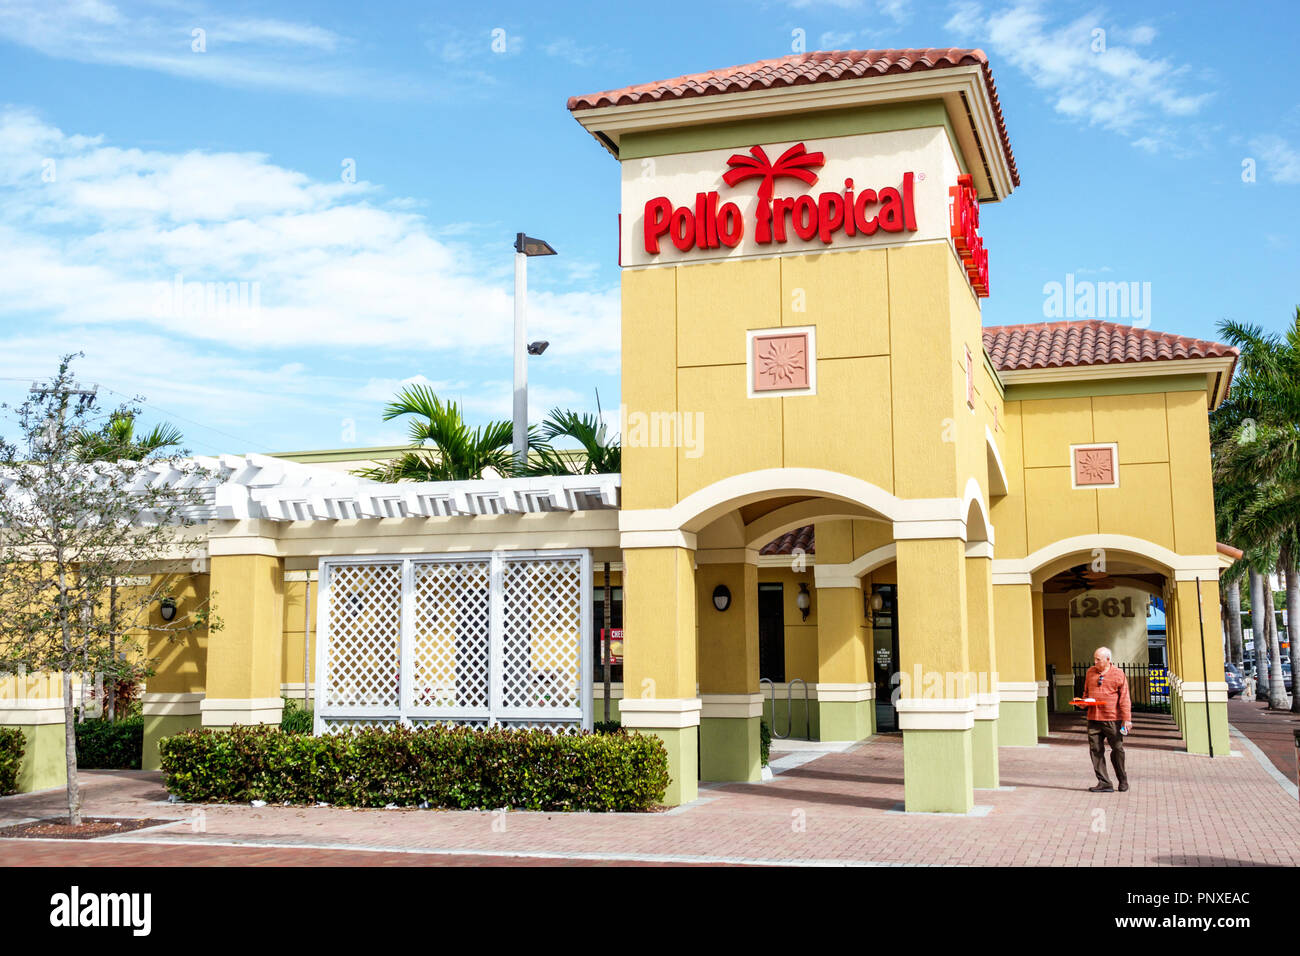 Miami Florida,Little Havana,Polo Tropical,restaurant restaurants cuisine café cafés,entrée principale,affaires,FL180201026 Banque D'Images